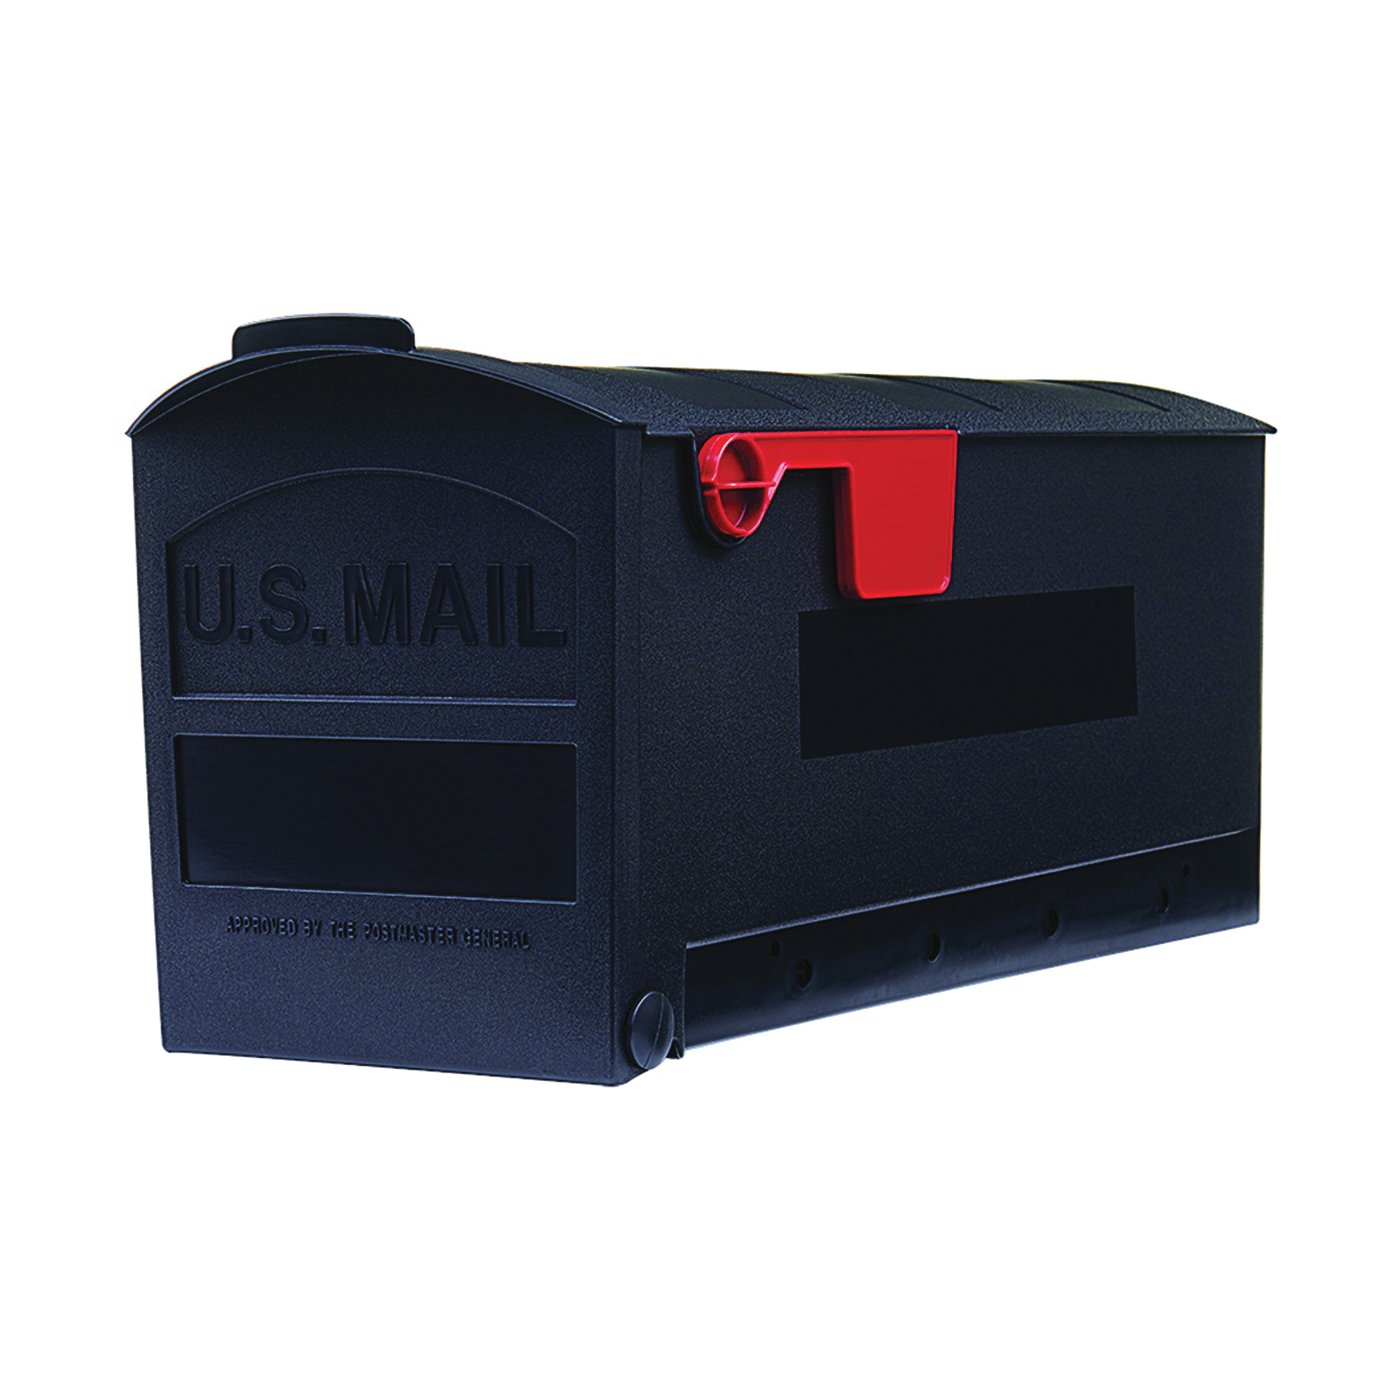 Gibraltar Mailboxes 